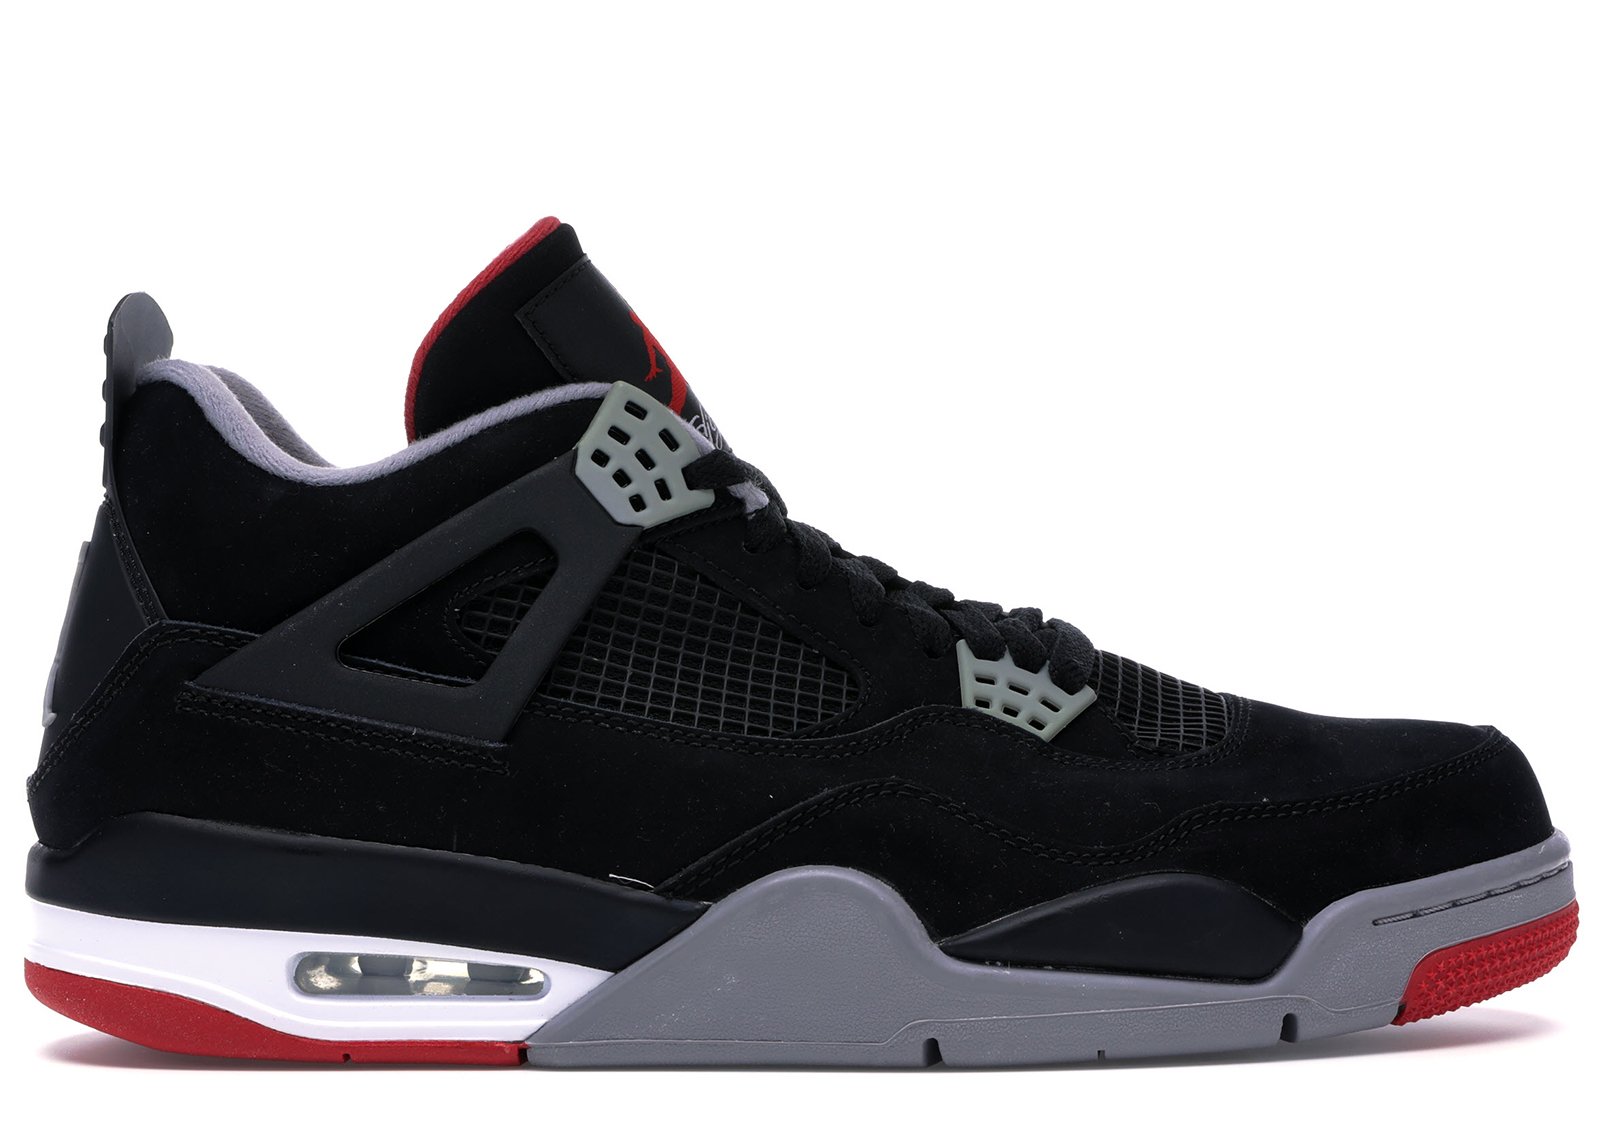 Jordan 4 Retro Black Cement (2012) sneakers